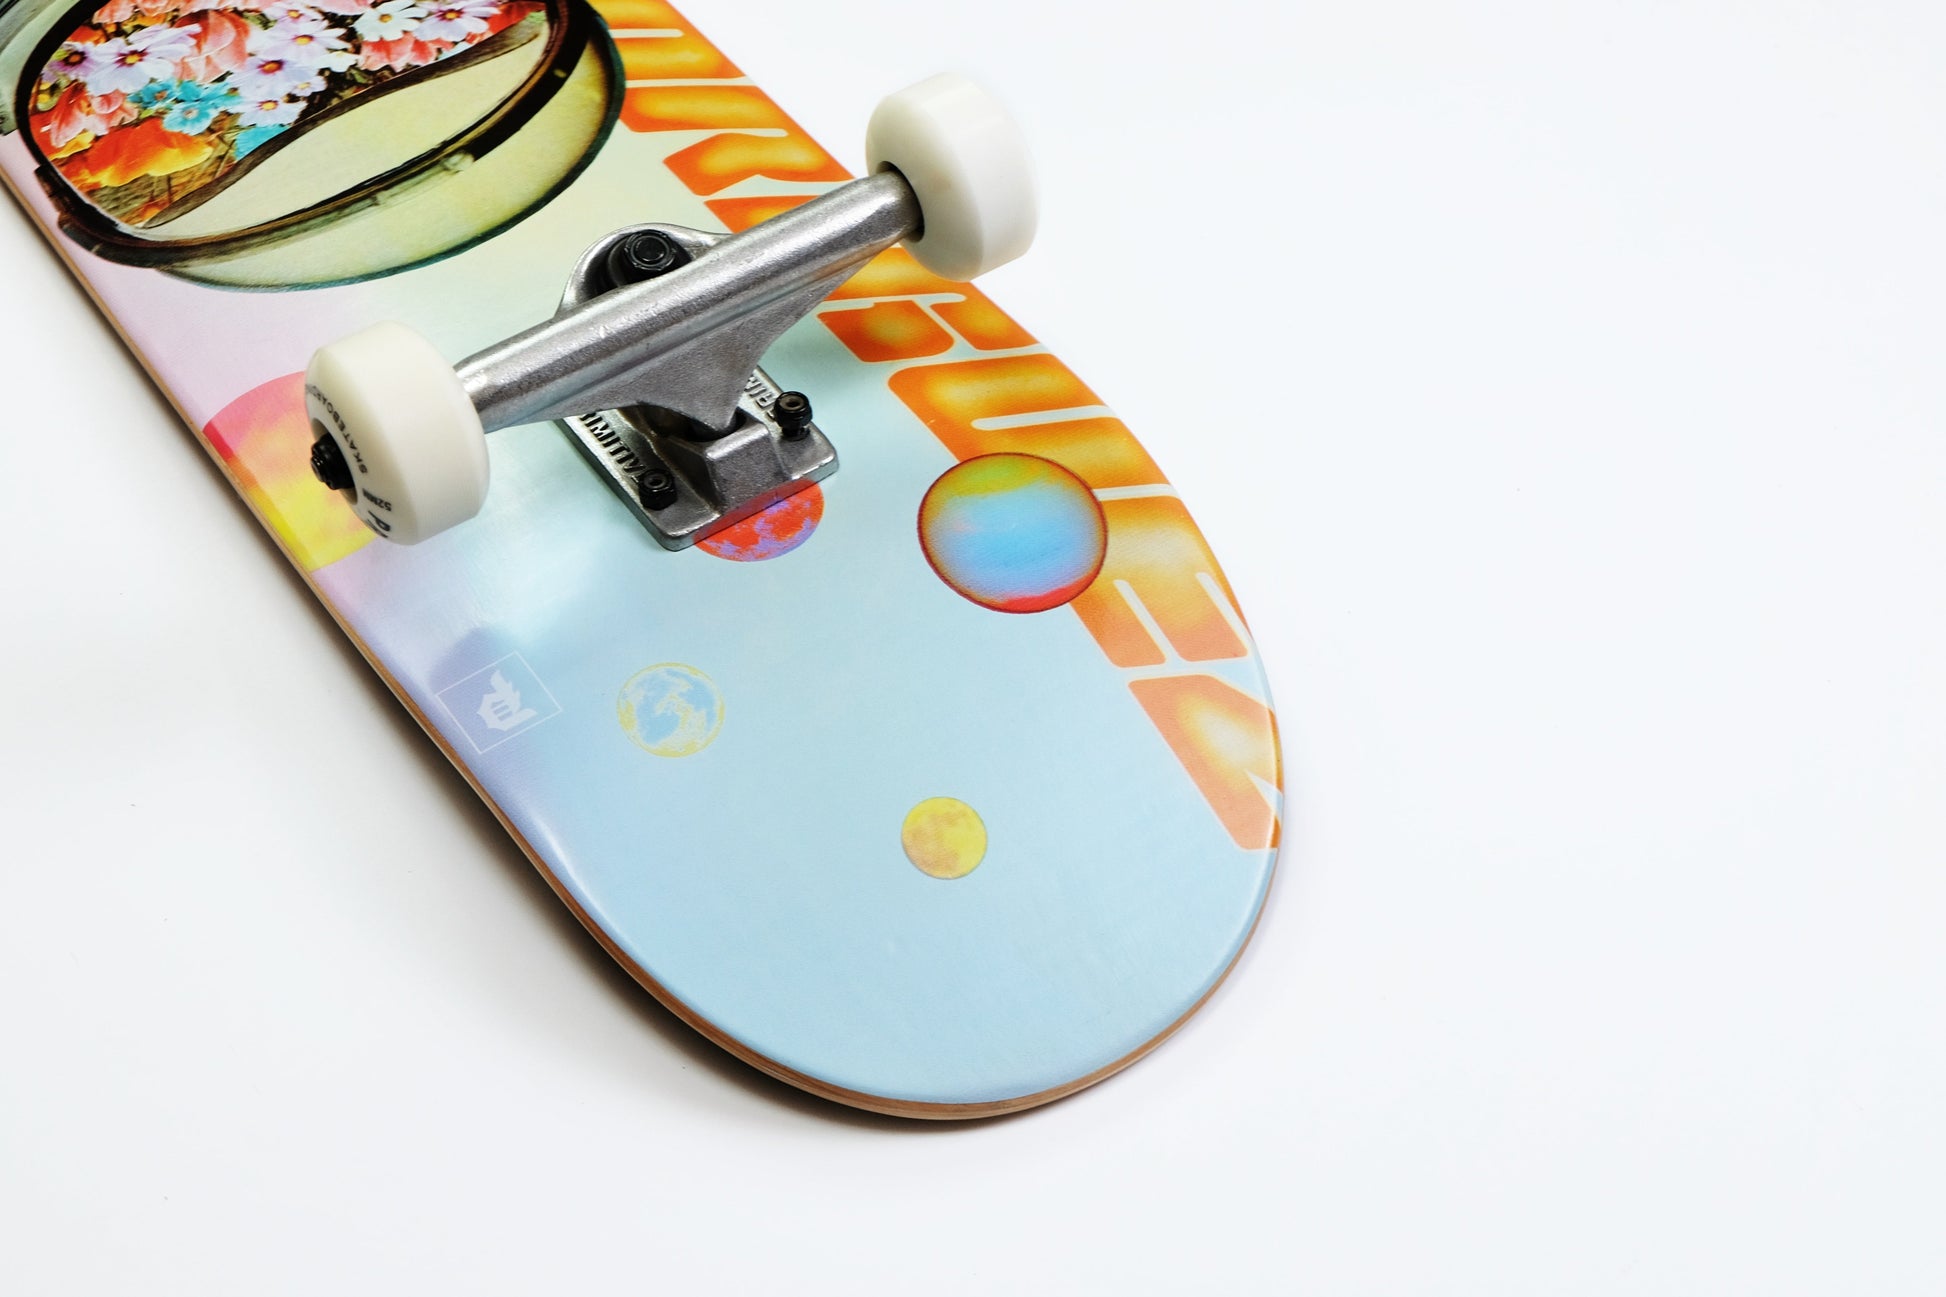 Primitive Spaceman Skateboard - SkatebruhSG